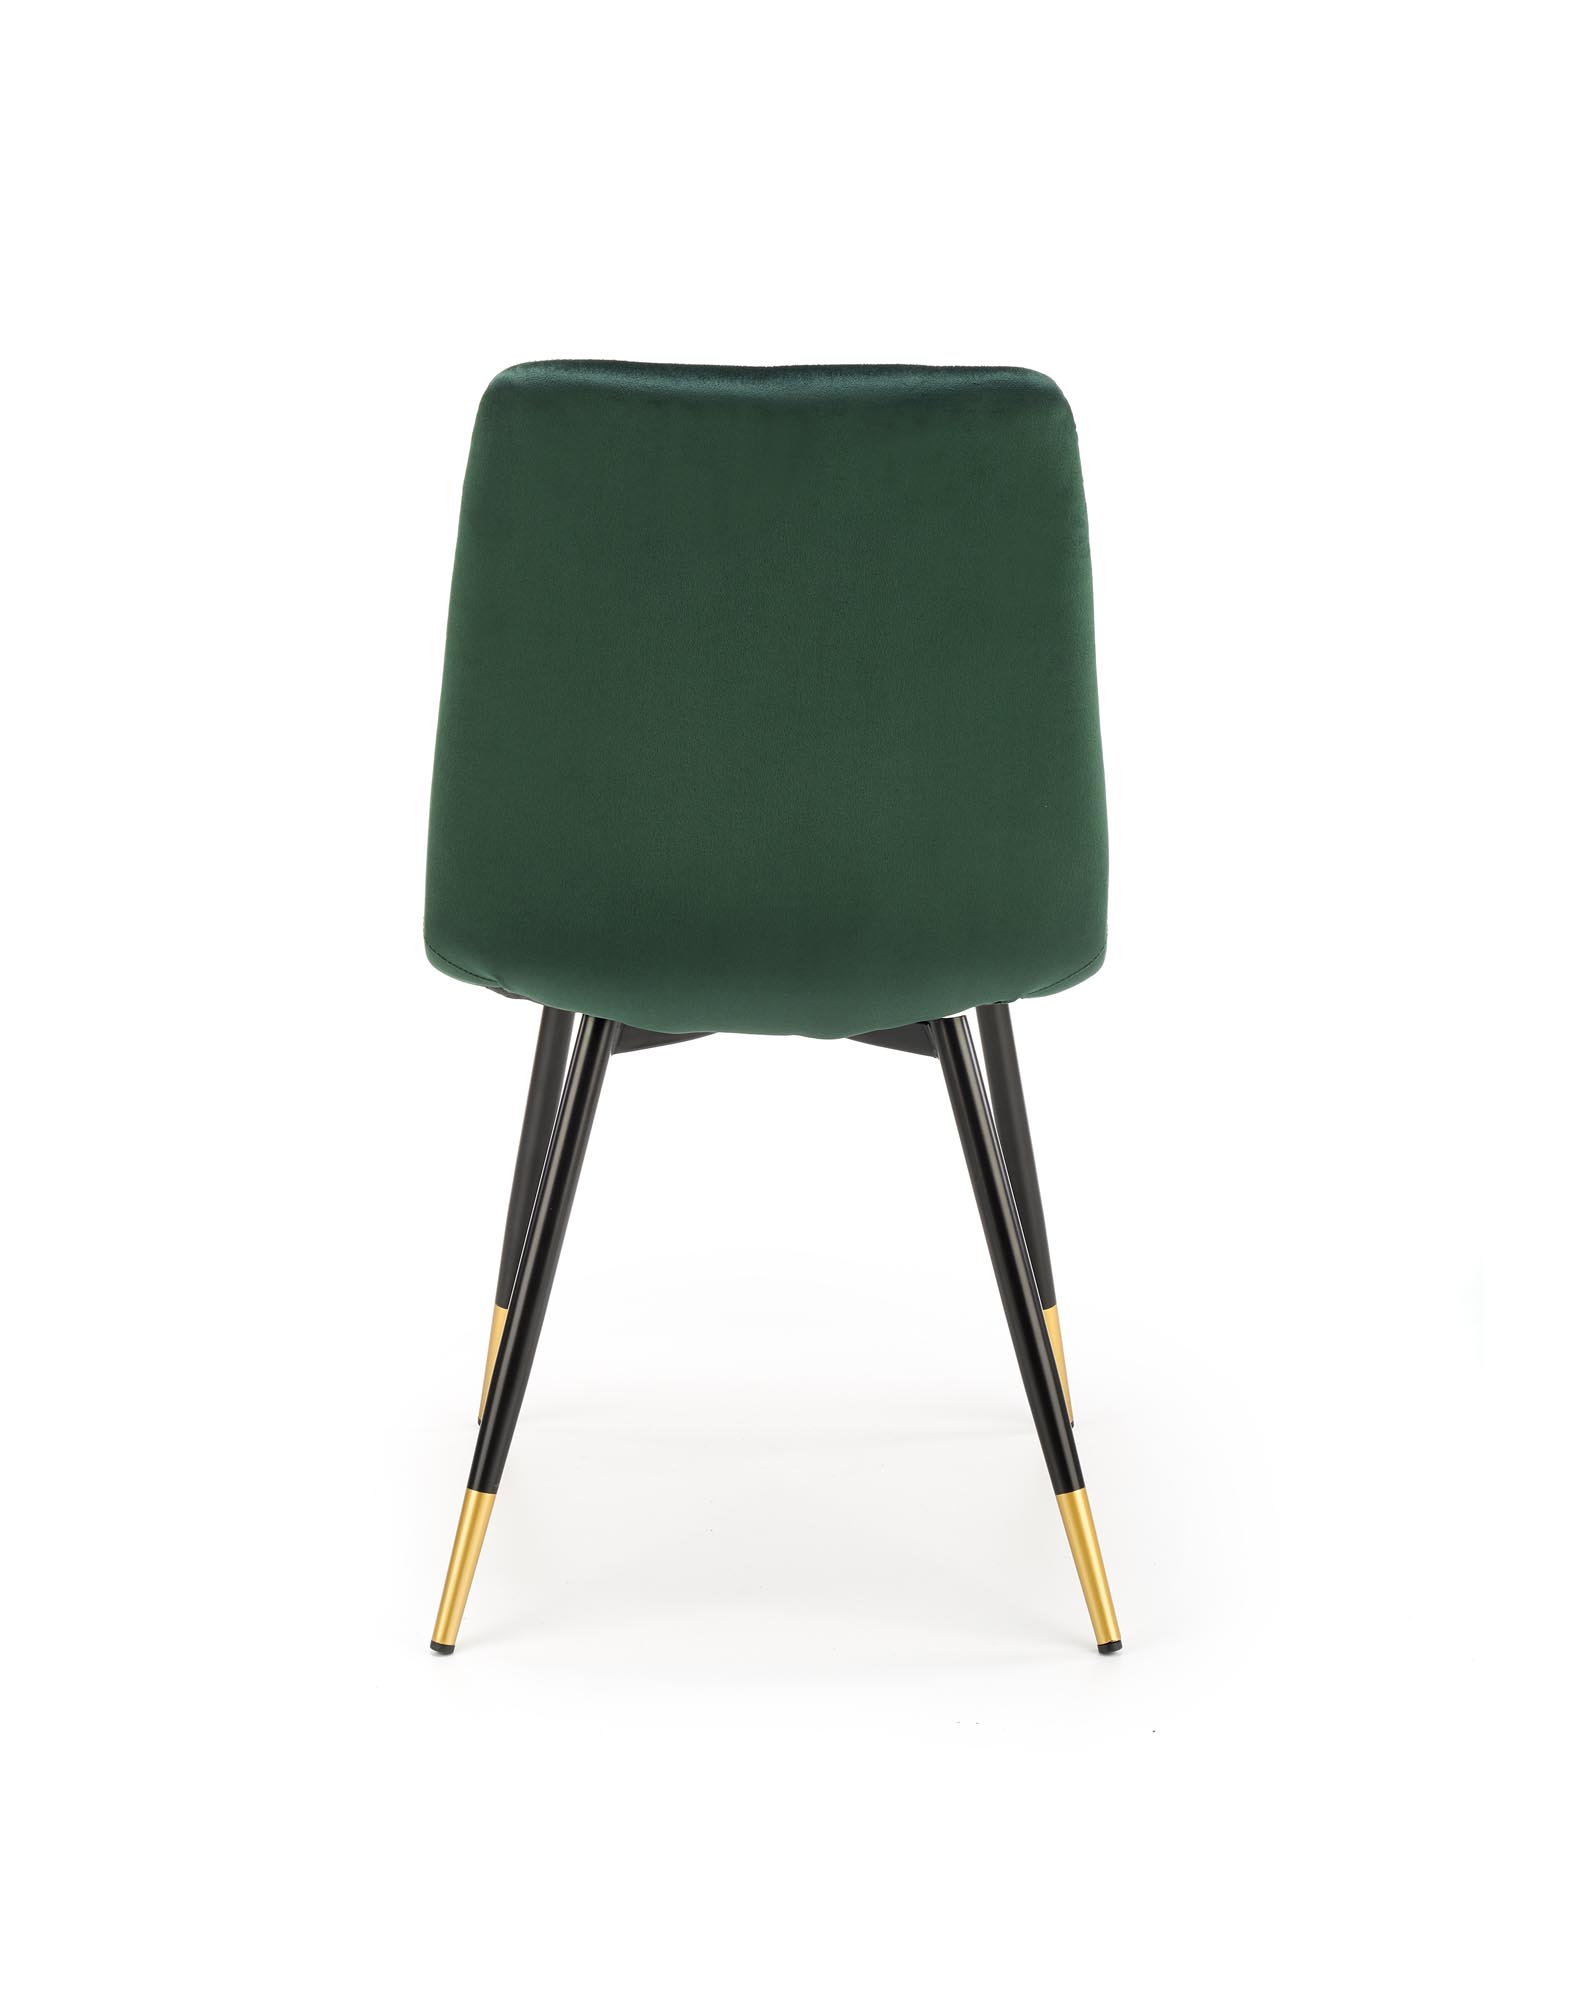 Moderná čalúnená stolička K438 - tmavo zelená moderné Stolička čalúnená k438 - tmavý Zelený